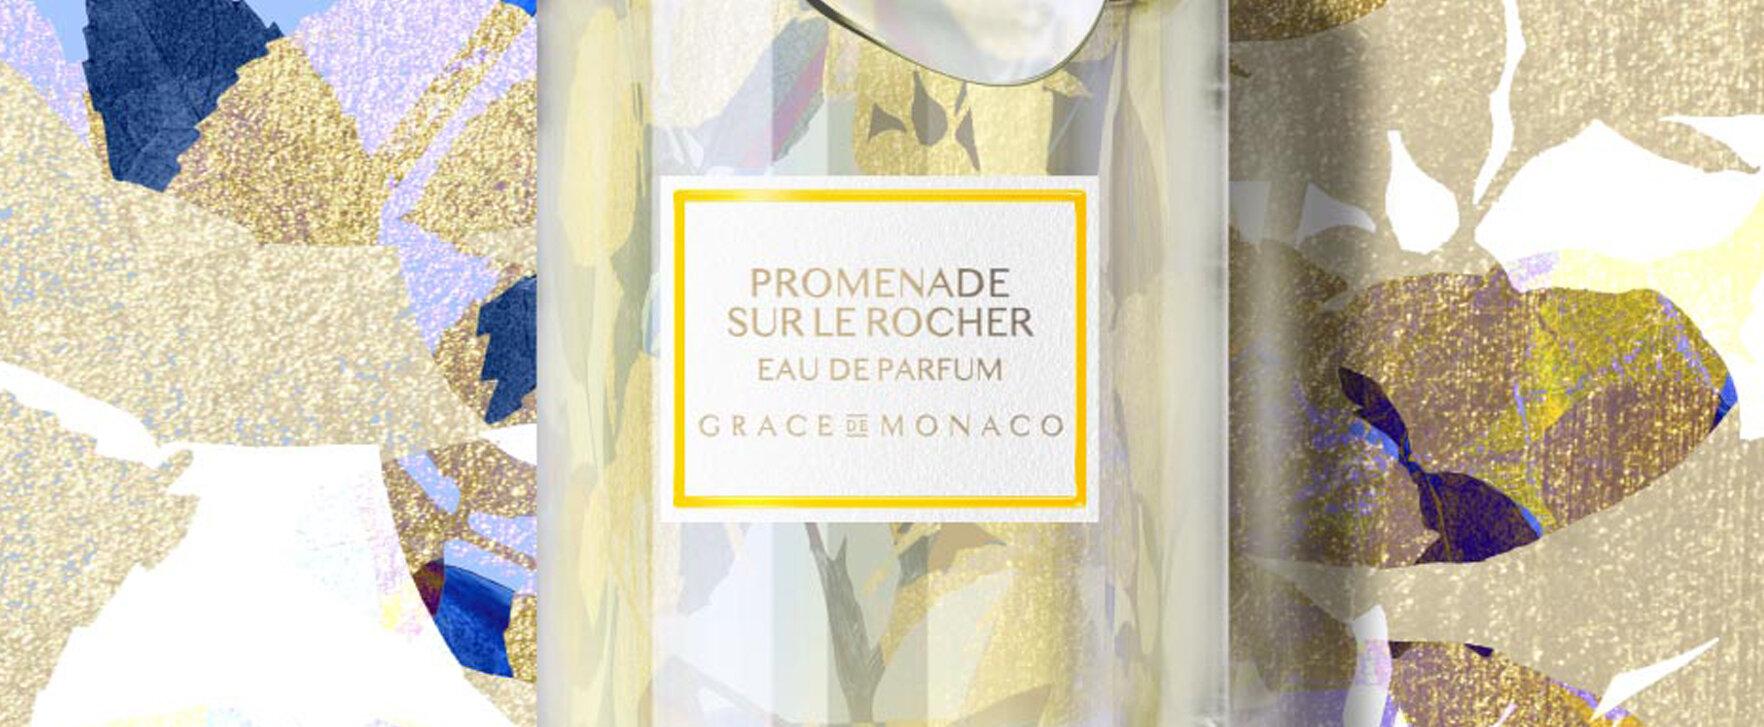 Grace de Monaco Launches “Promenade Sur Le Rocher” (Eau de Parfum)